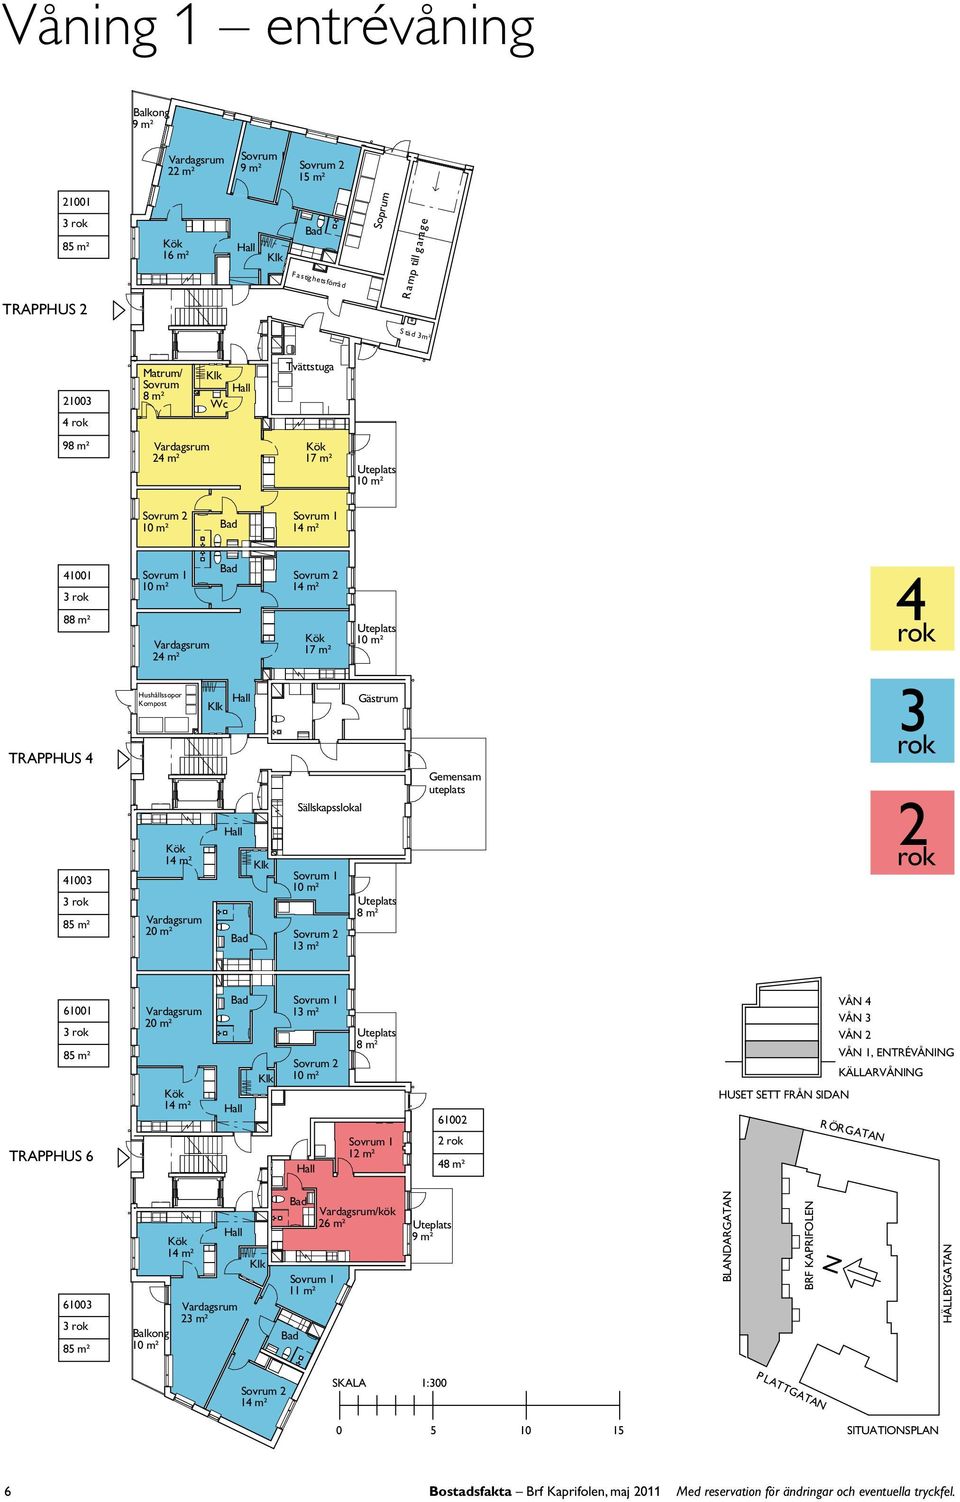 emensam uteplats 4 3 6 3 8 m² TRAPPHUS 6 m² 3 m² Uteplats m² 6 4 HUSET SETT FRÅ SIDA VÅ 4 VÅ 3 VÅ VÅ, ETRÉVÅI KÄARVÅI R ÖRATA 63 3 8 m² 3 m²